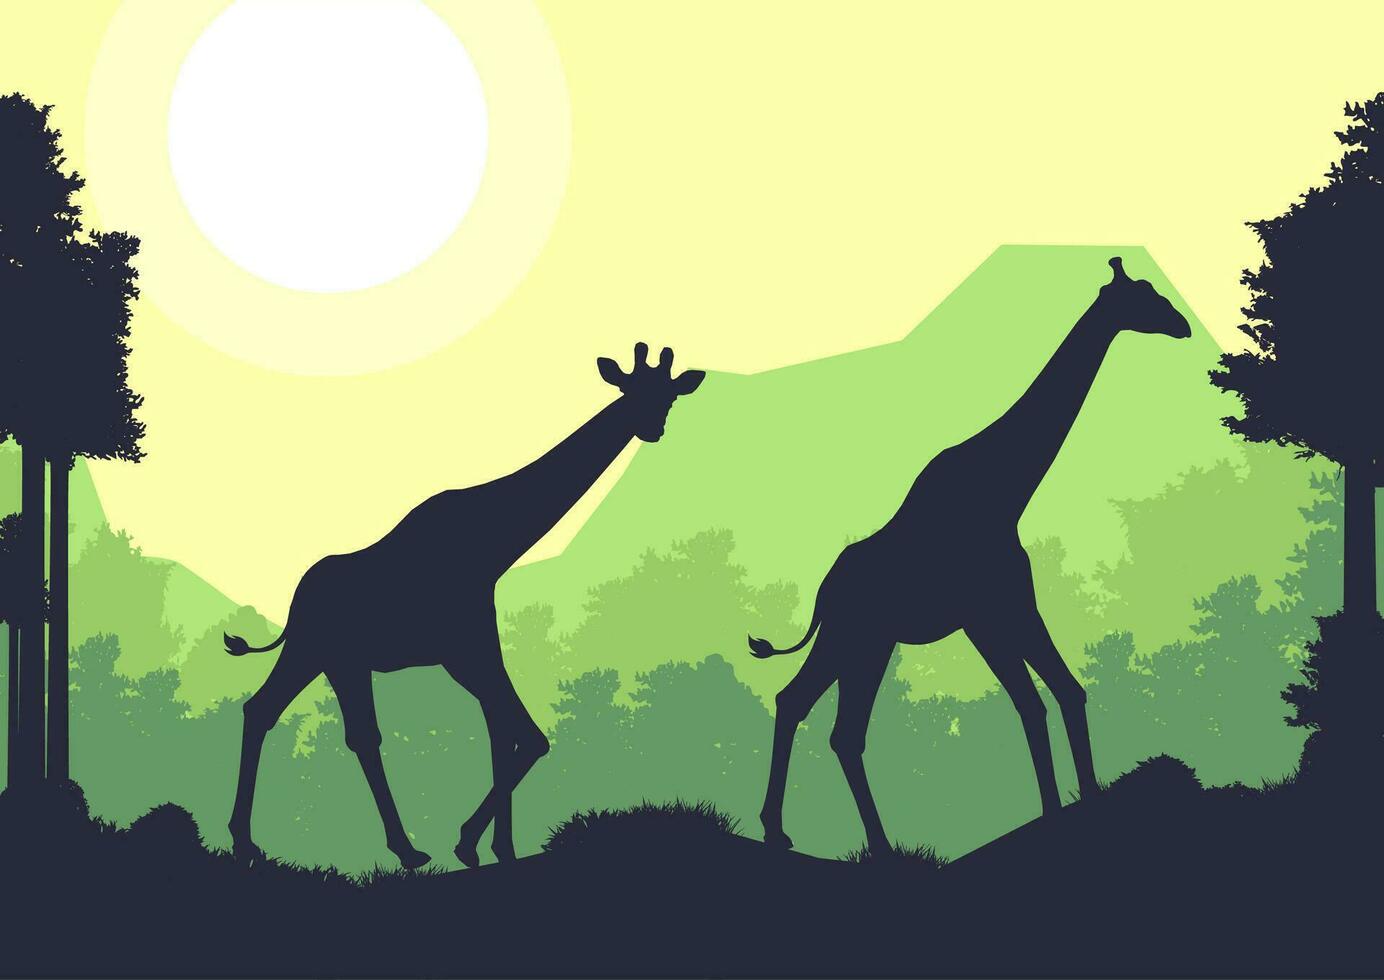 jirafa animal silueta bosque montaña paisaje plano diseño vector ilustración